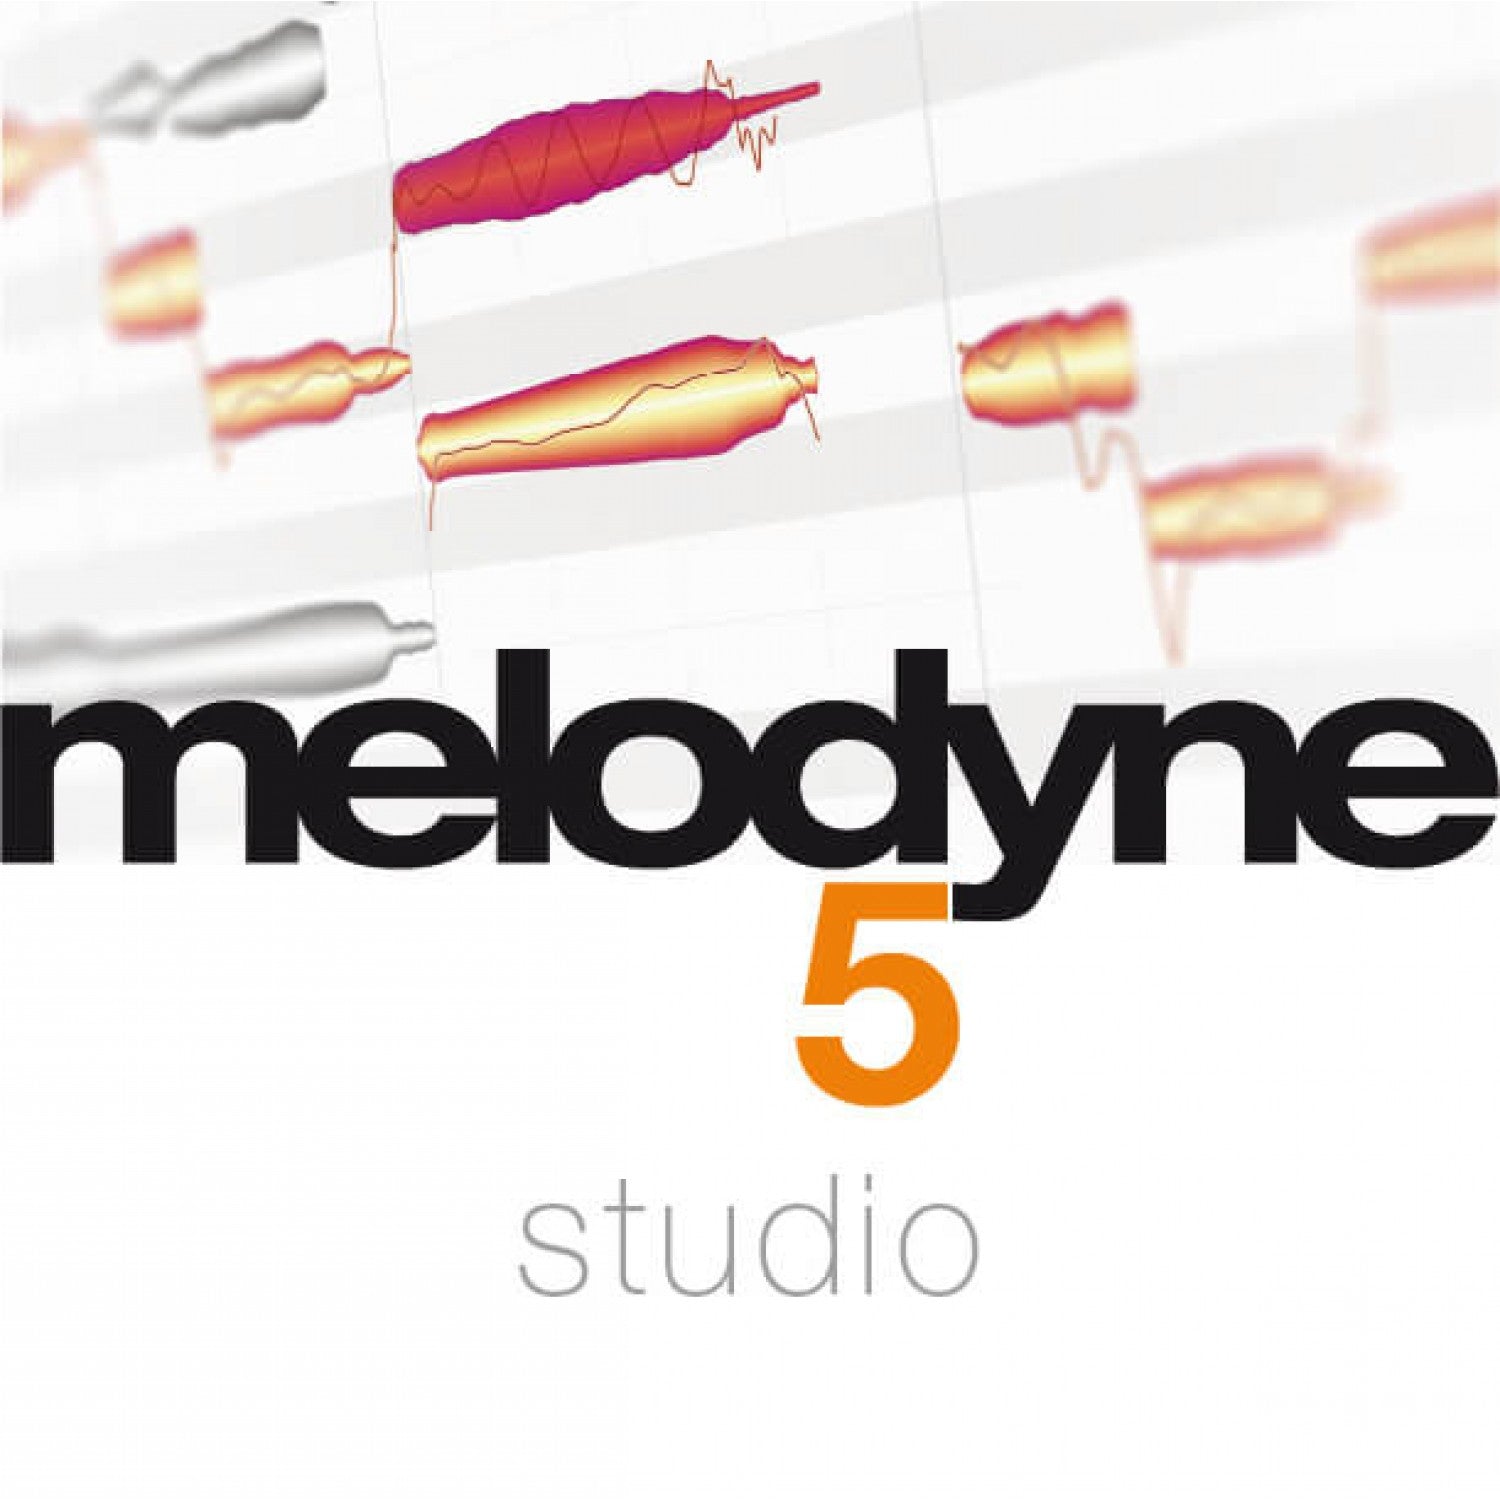 (Update) Celemony Melodyne 4 Studio 更新成 Celemony Melodyne 5 Studio 音樂軟體 (下載版)